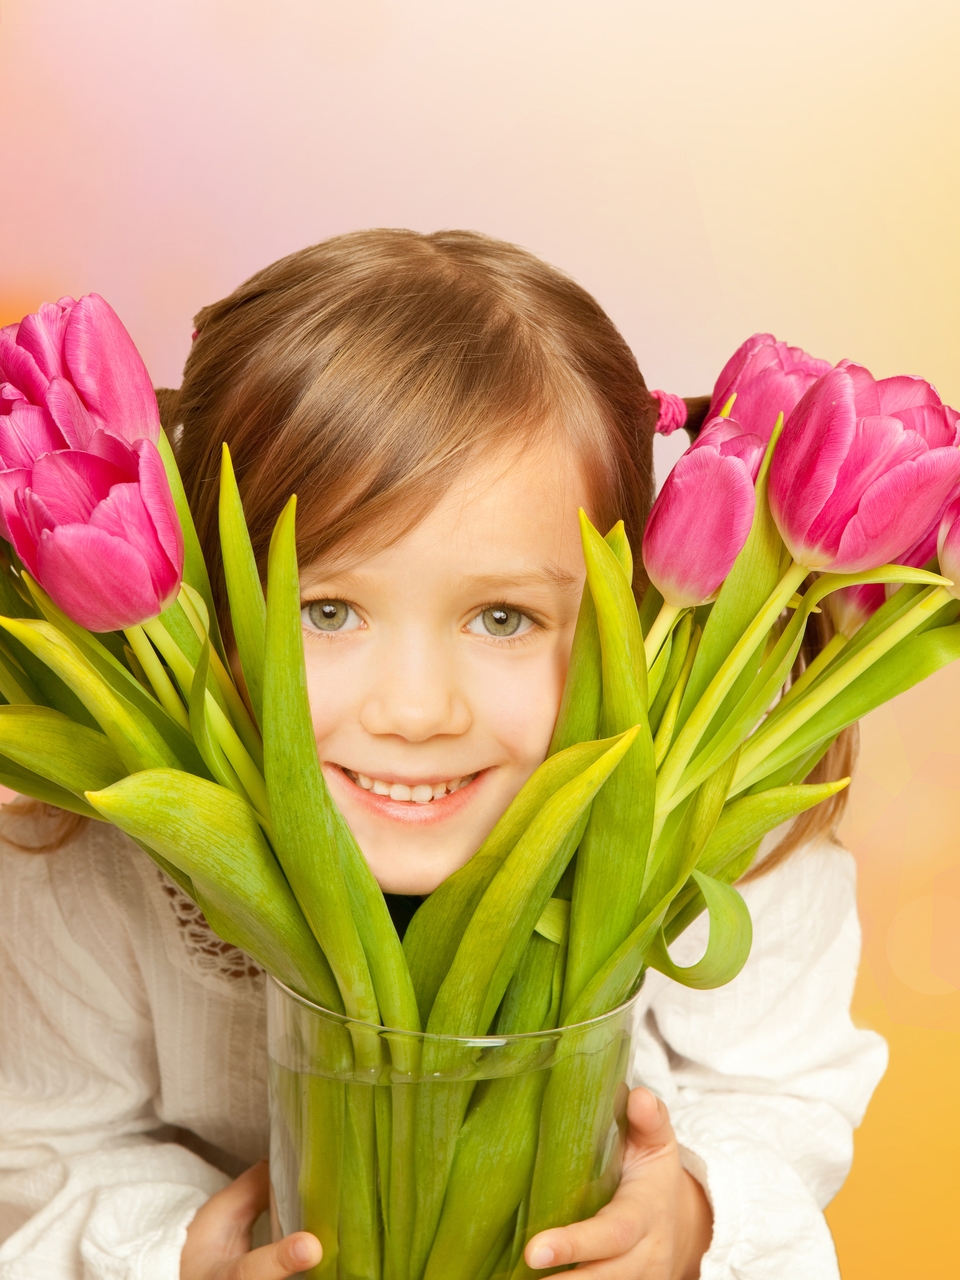 Картинка: Девочка, взгляд, улыбка, тюльпаны, цветы